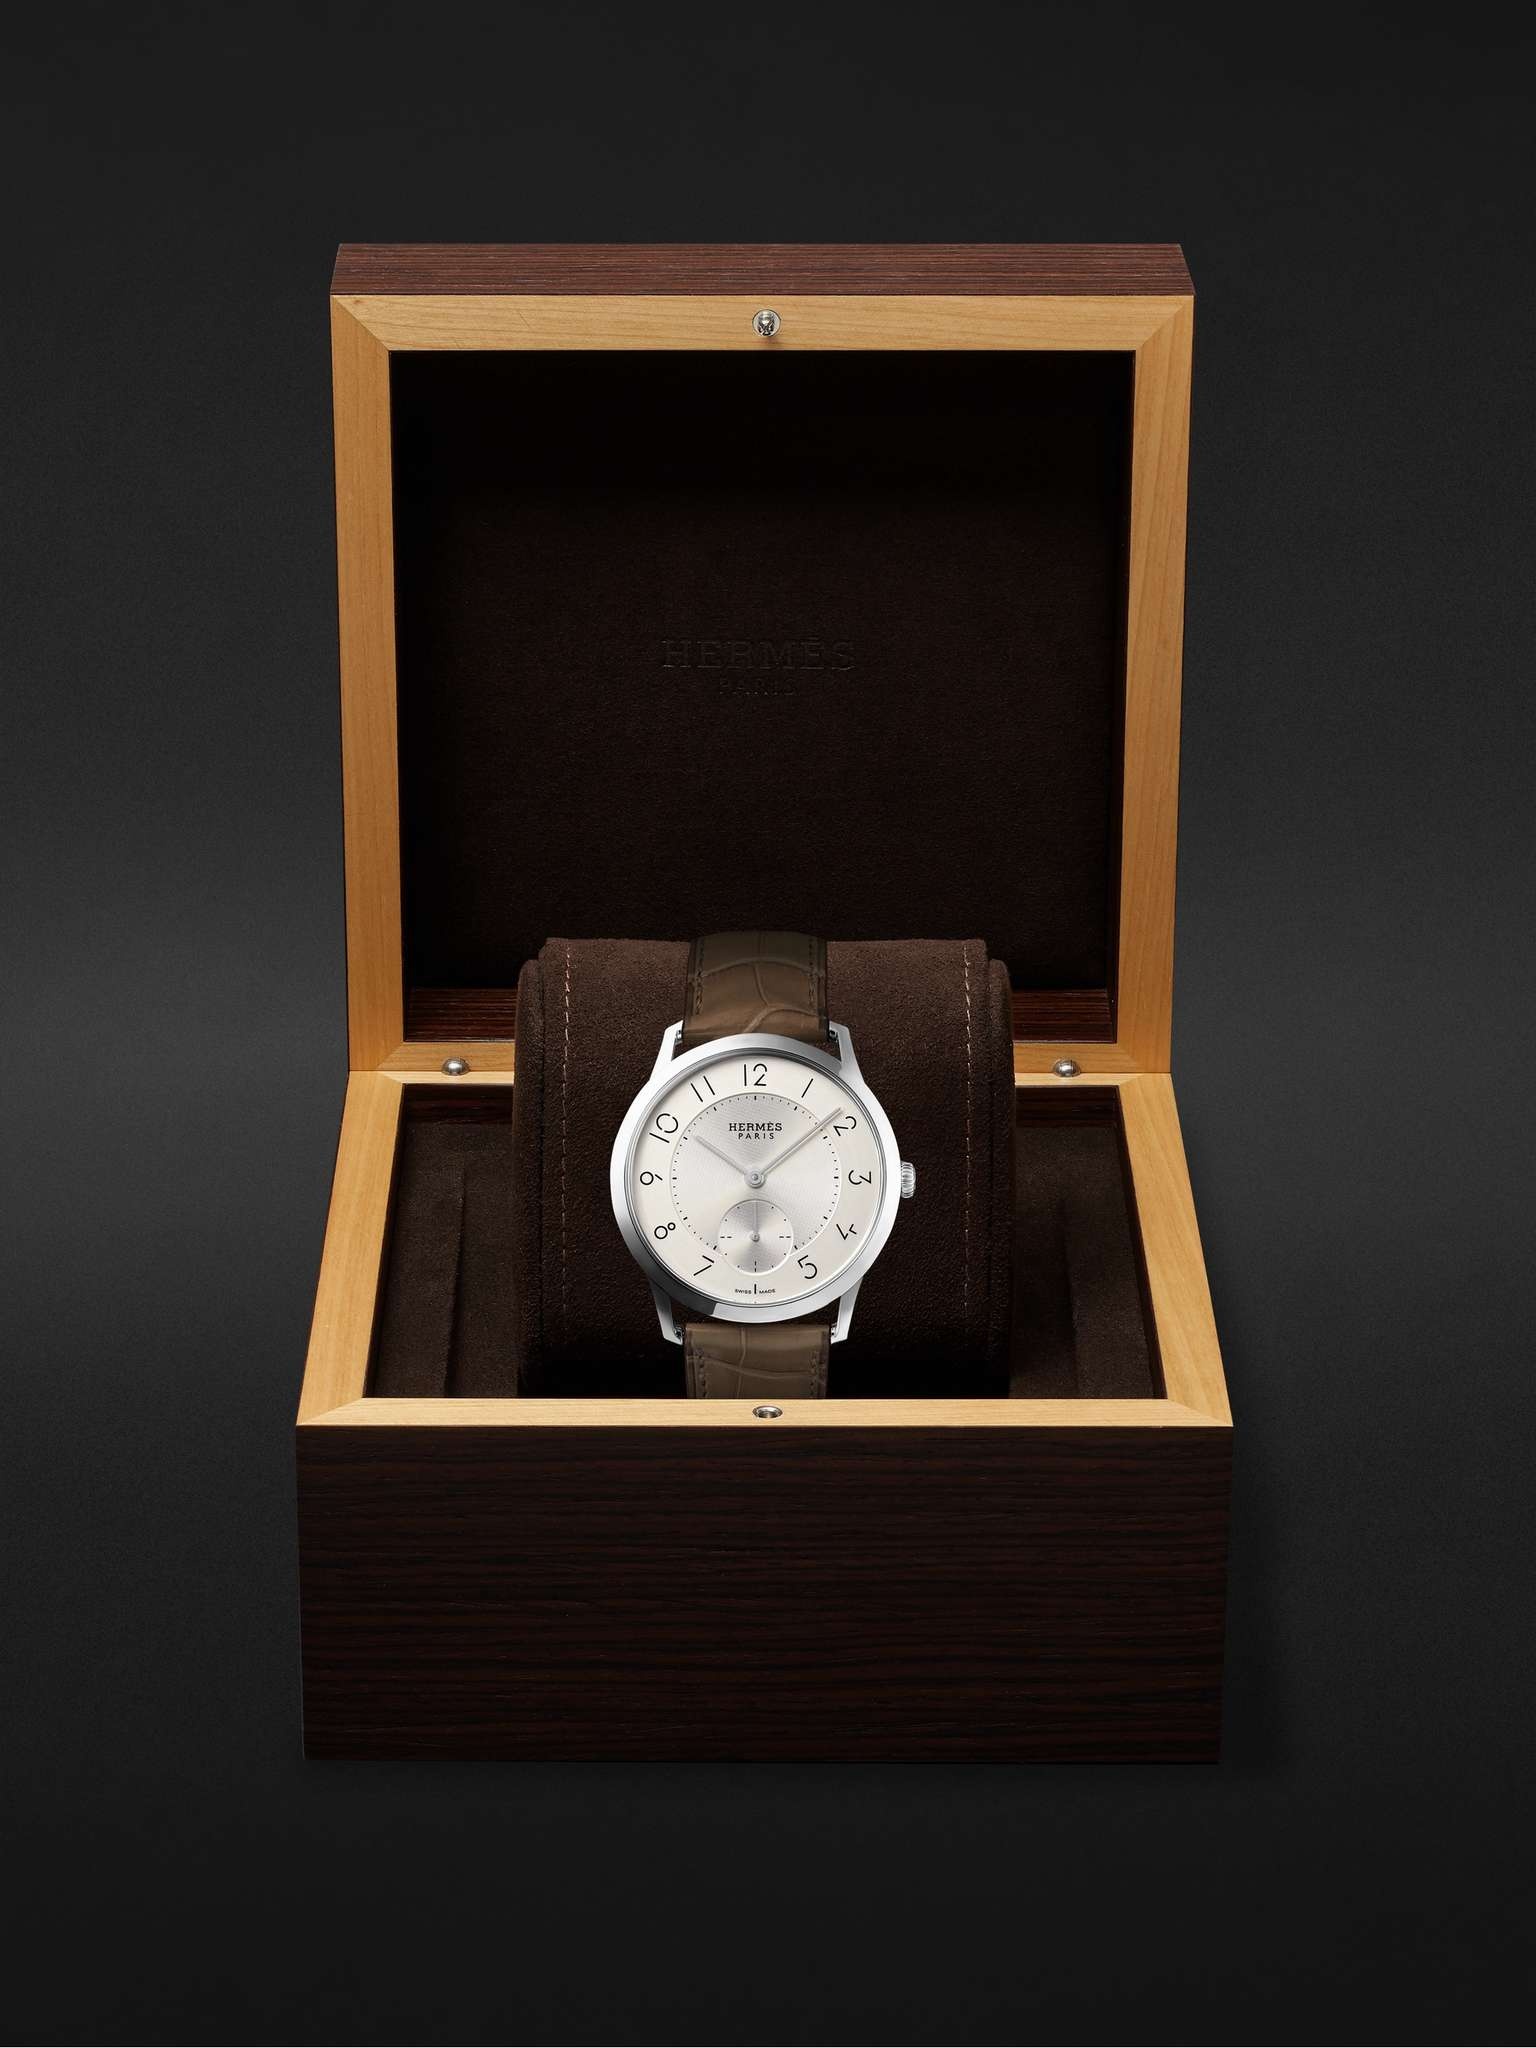 Slim d'Hermès Acier Automatic 39.5mm Stainless Steel and Alligator Watch, Ref. No. W045266WW00 - 8